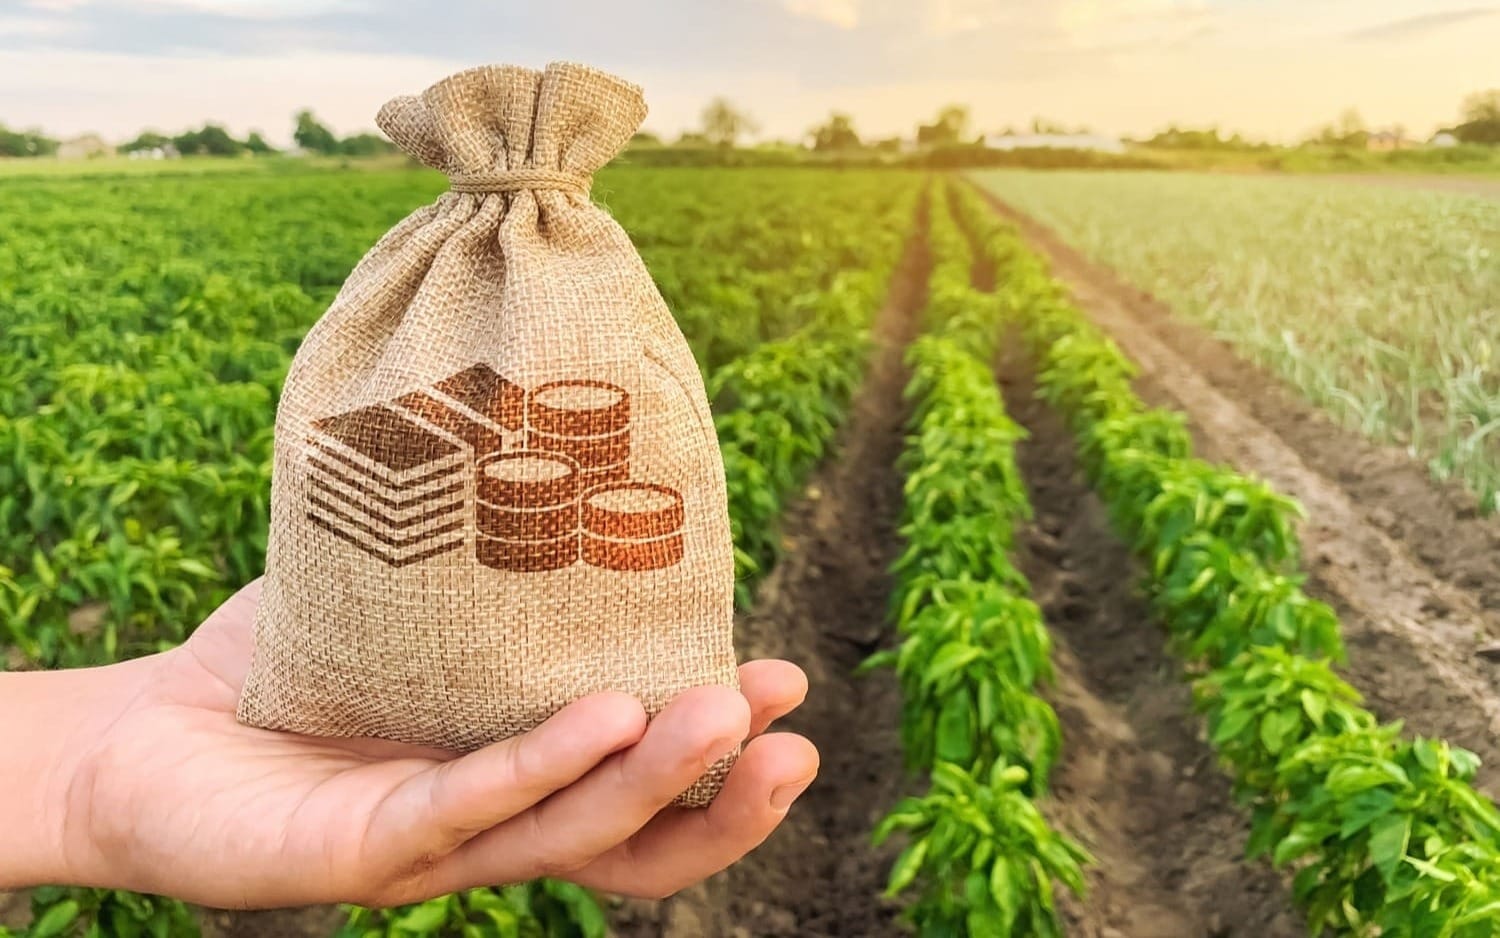 Фермеры КР получили свыше 3 тысяч льготных кредитов почти на 1.25 млрд сомов по проекту «ФСХ-12»